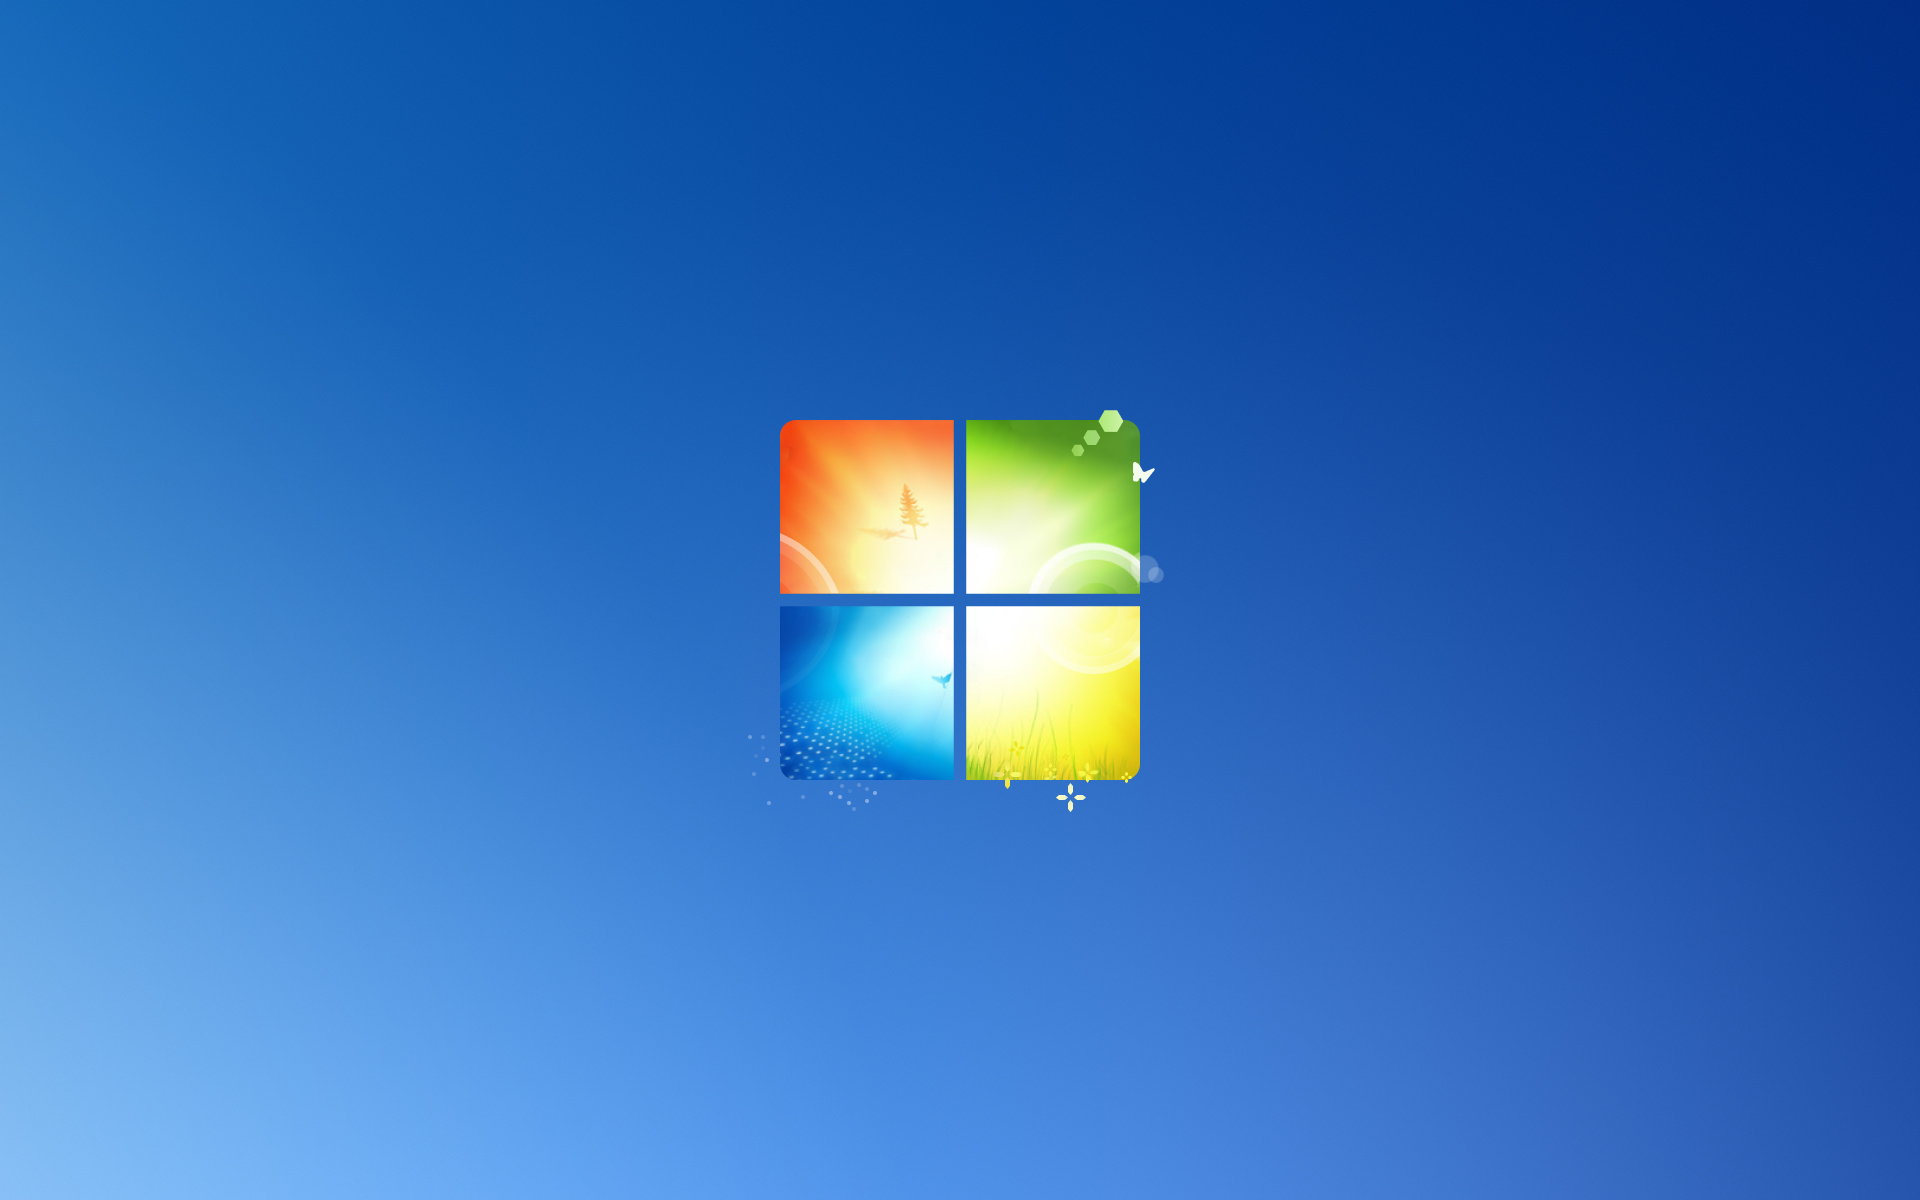 Hình nền Windows 10X/7 được thiết kế theo phong cách Windows 11 bởi các nhà thiết kế tài ba. Đây là một sự kết hợp hoàn hảo giữa phong cách truyền thống và hiện đại, mang đến cho người dùng cảm giác mới lạ và độc đáo.